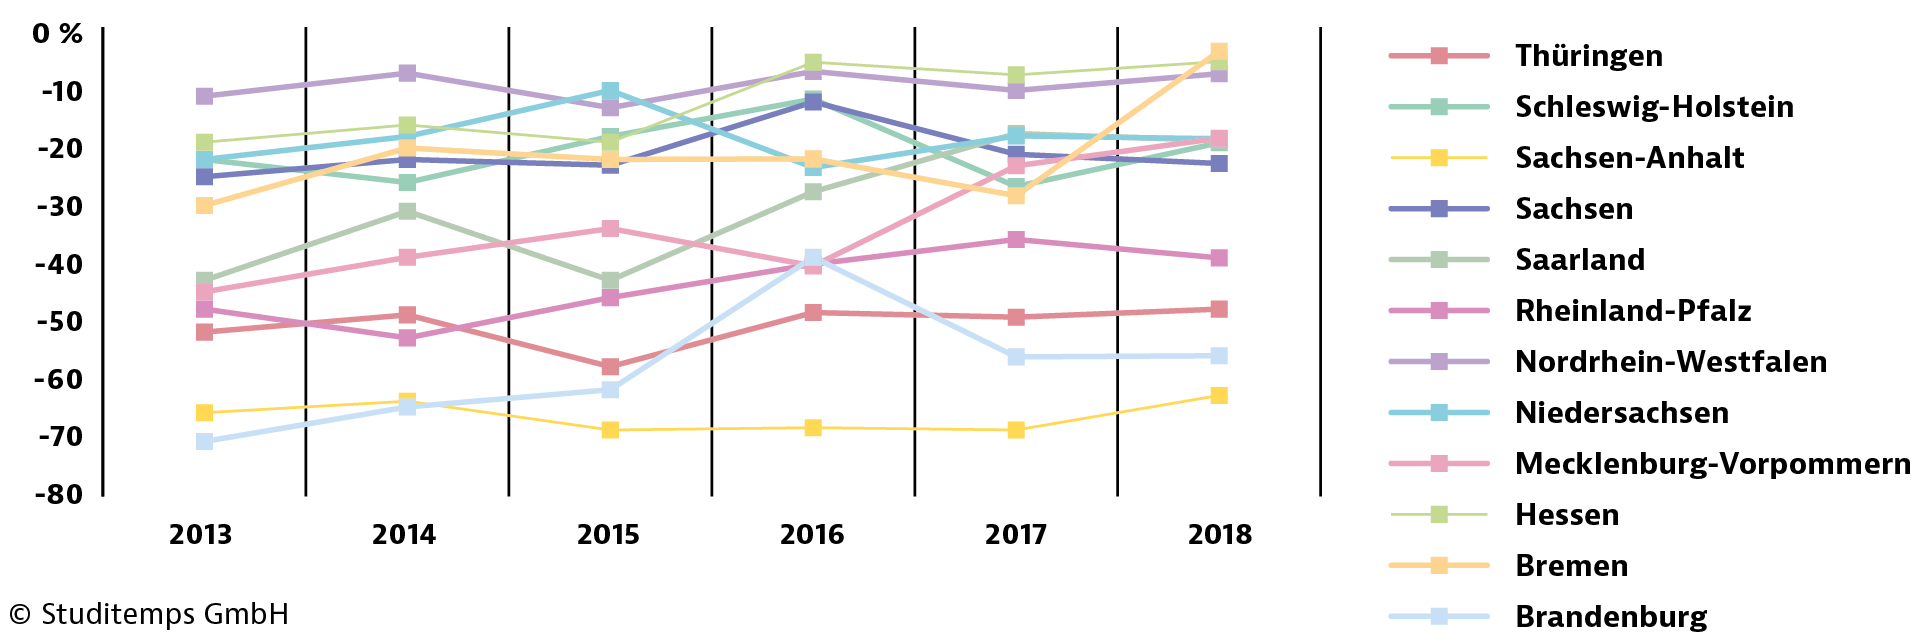 GETPRESS-Diagramm-Trend-der-studentischen-Migration-negativ